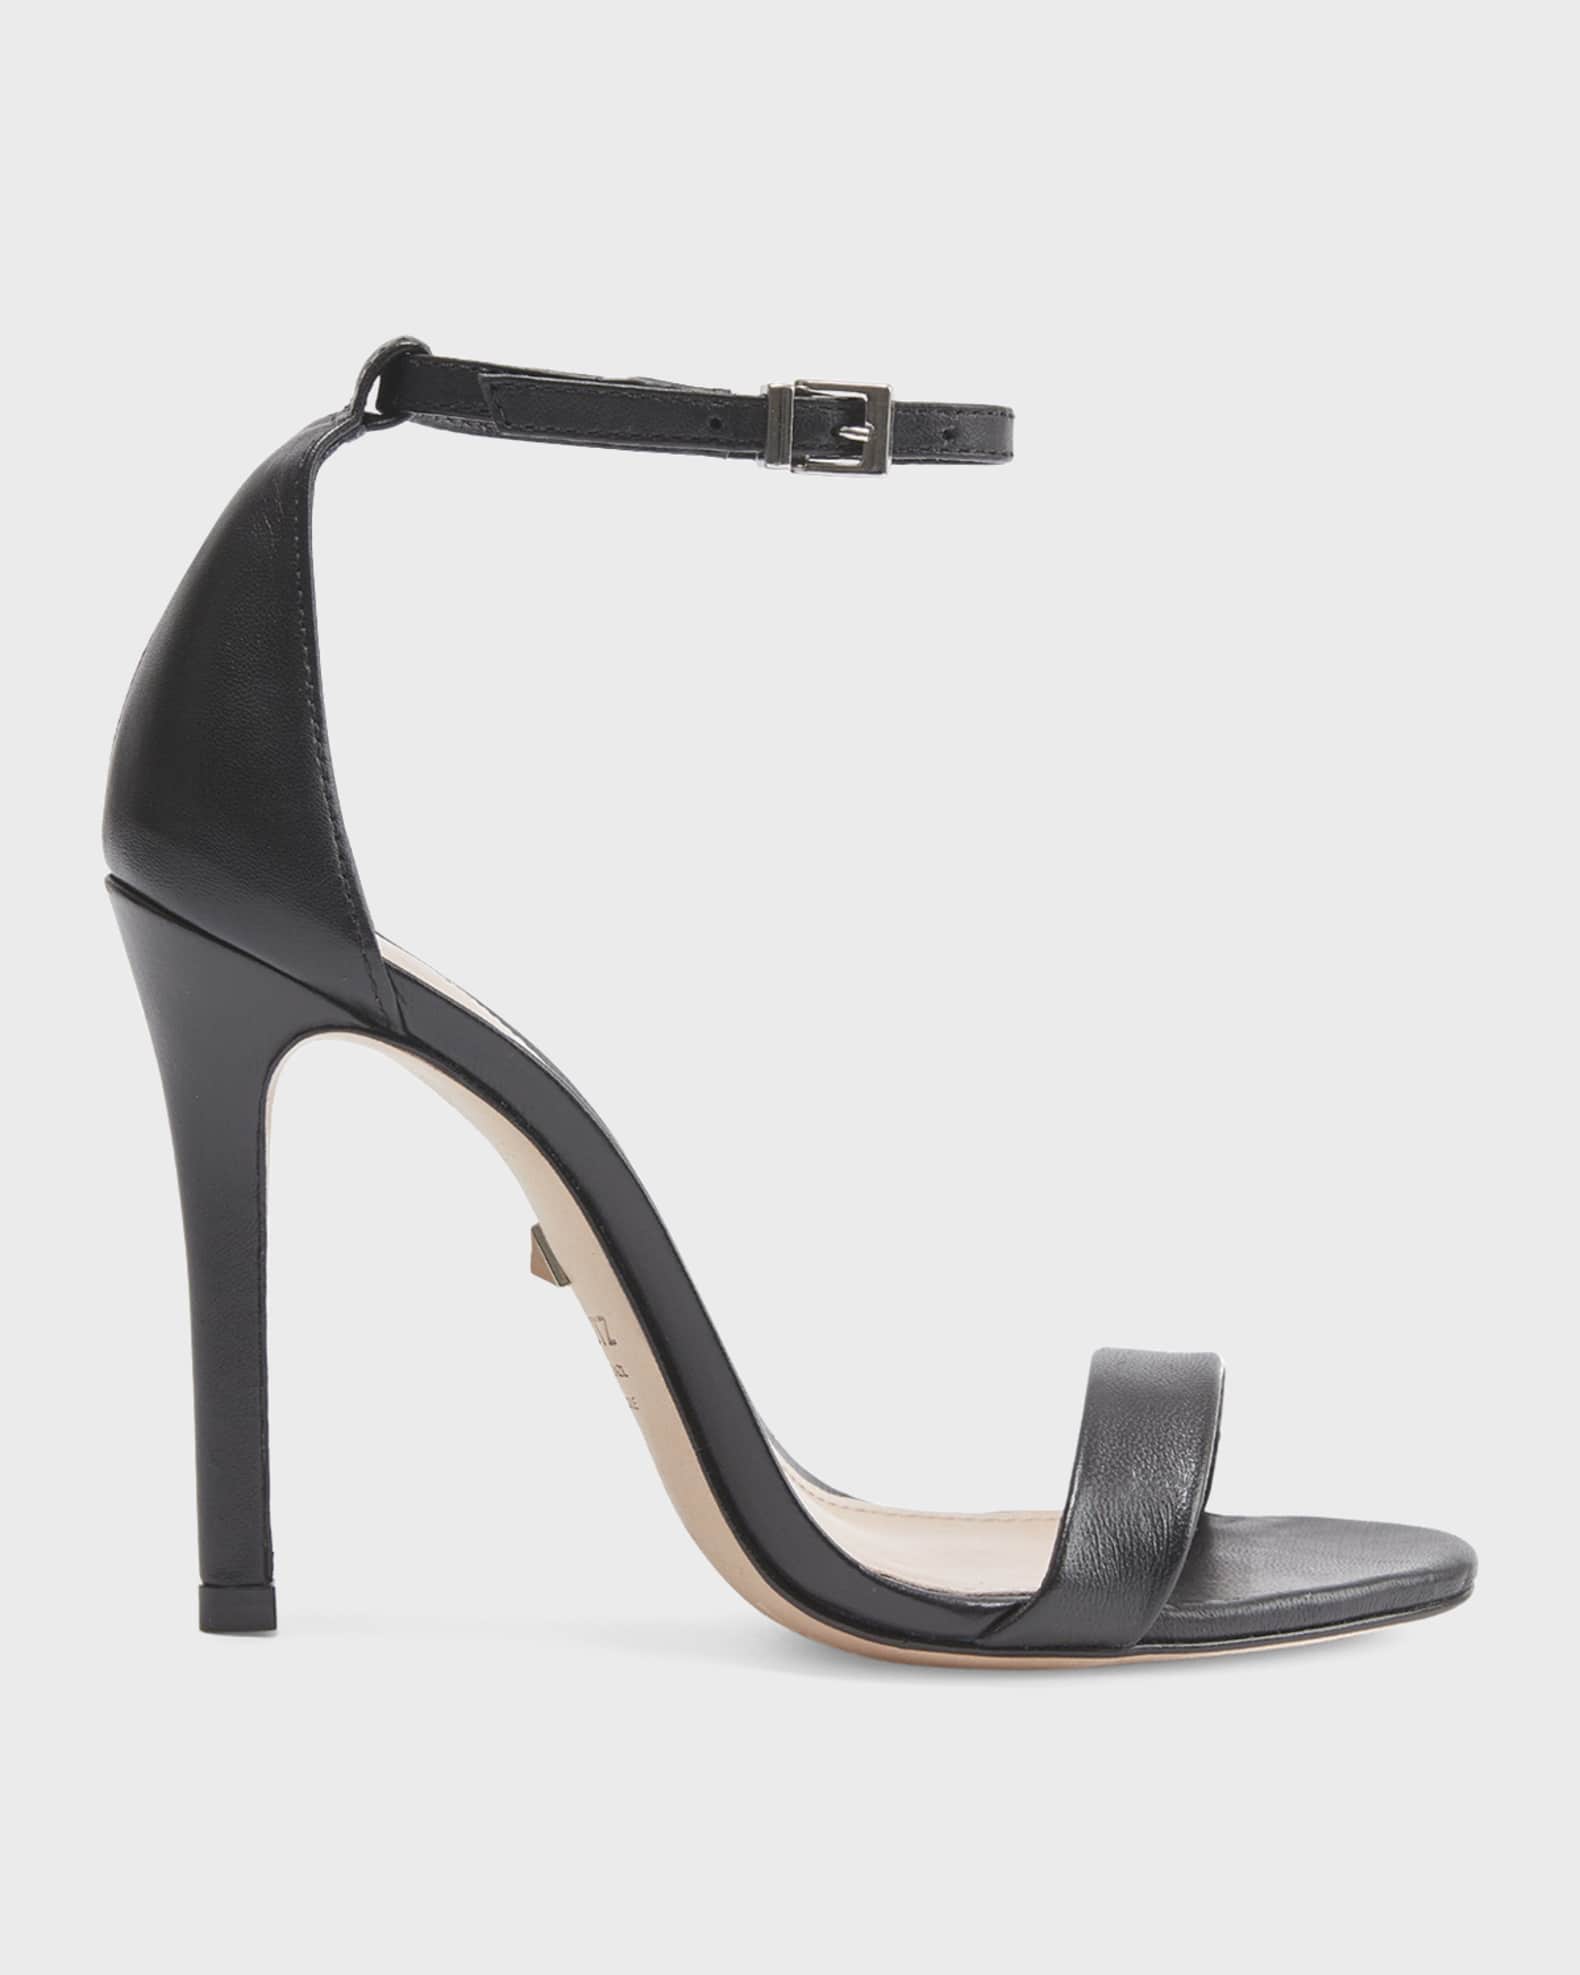 Schutz Cadey Lee Croc-Print Stiletto Sandals | Neiman Marcus